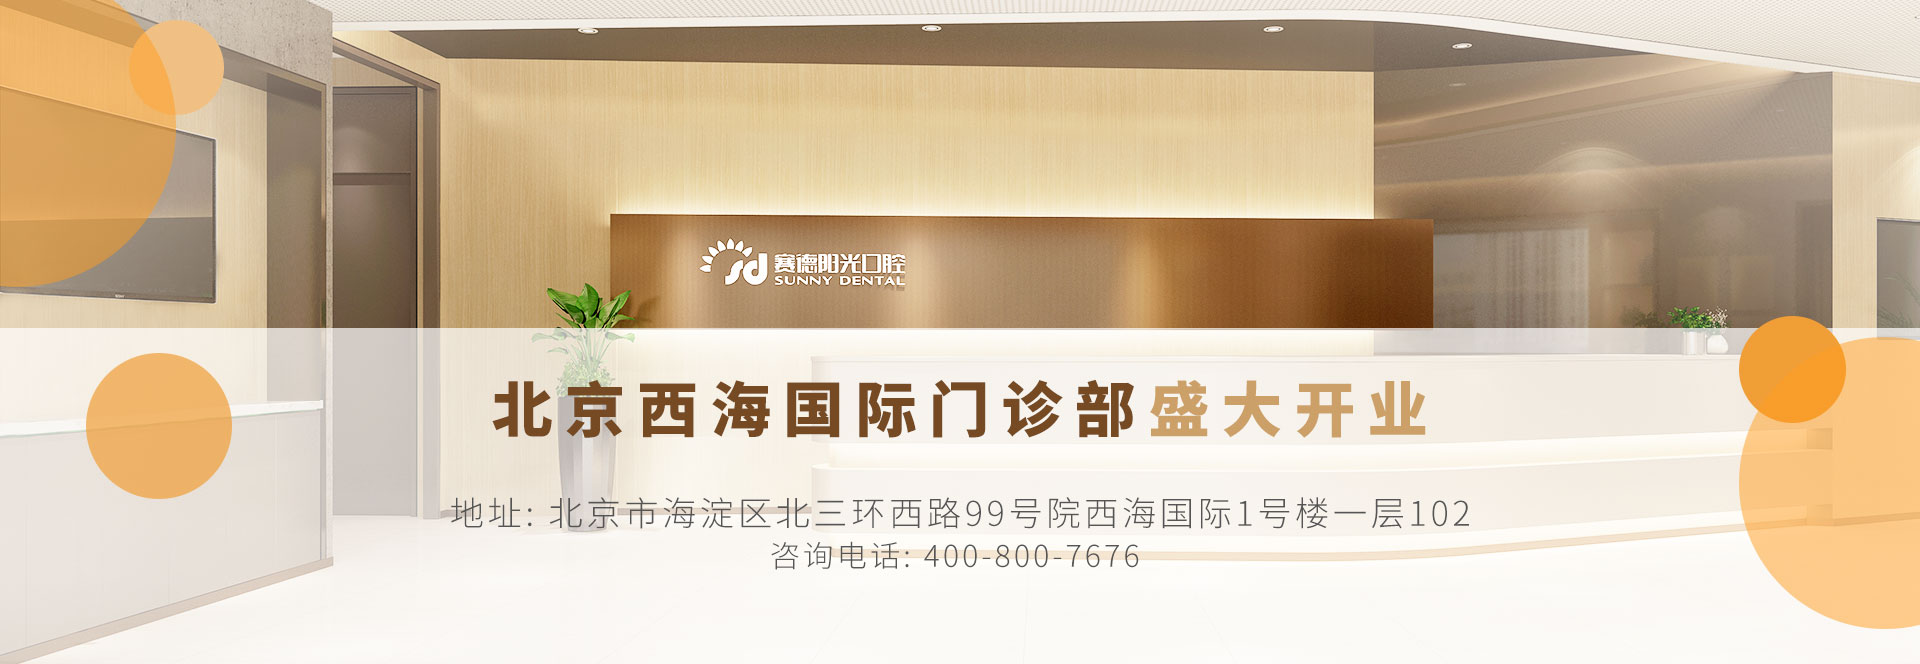 赛德阳光口腔北京西海国际门诊部盛大开业